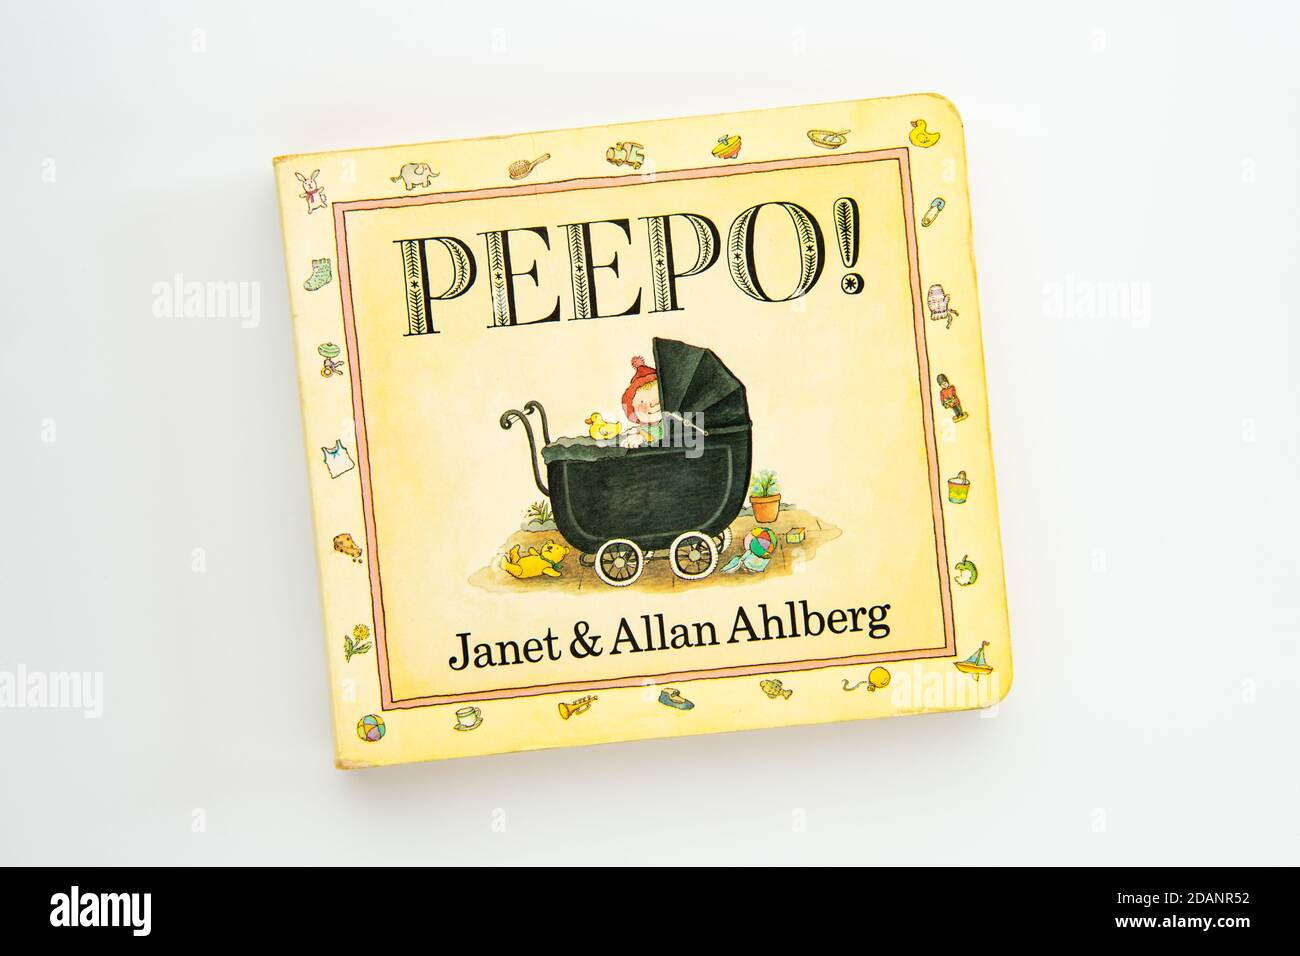 ¡Peepo! Por Janet y Allan Ahlberg - libro de juntas para bebés y niños pequeños Foto de stock